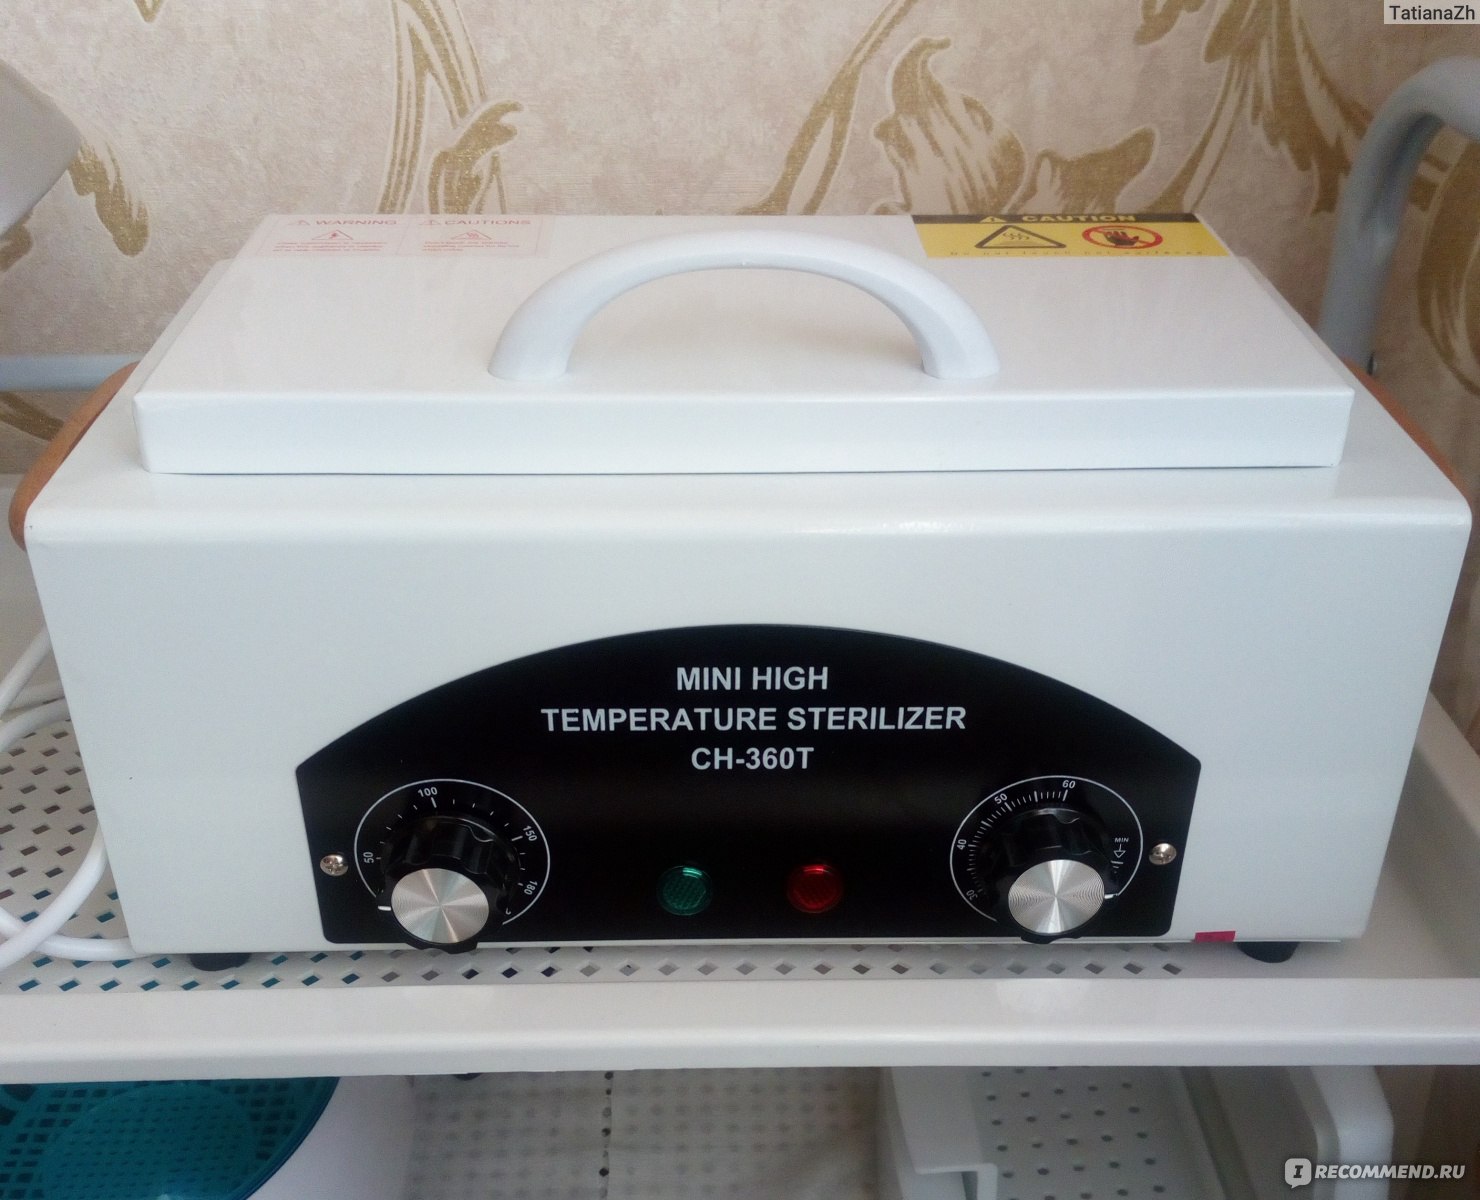 Время стерилизации инструментов в сухожаровом шкафу при температуре 180 в минутах